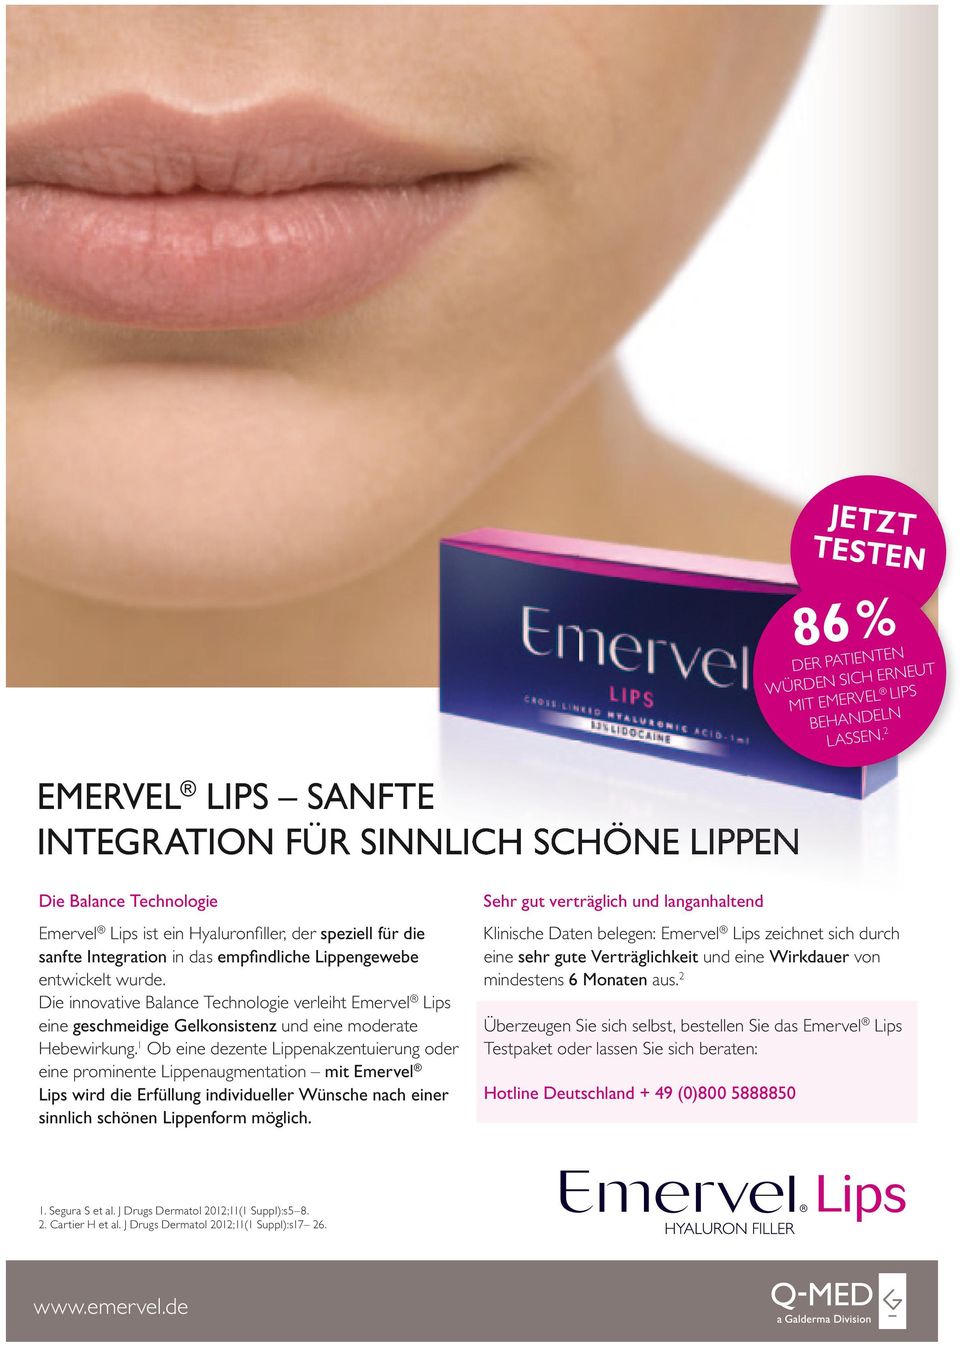 Die innovative Balance Technologie verleiht Emervel Lips eine geschmeidige Gelkonsistenz und eine moderate Hebewirkung.